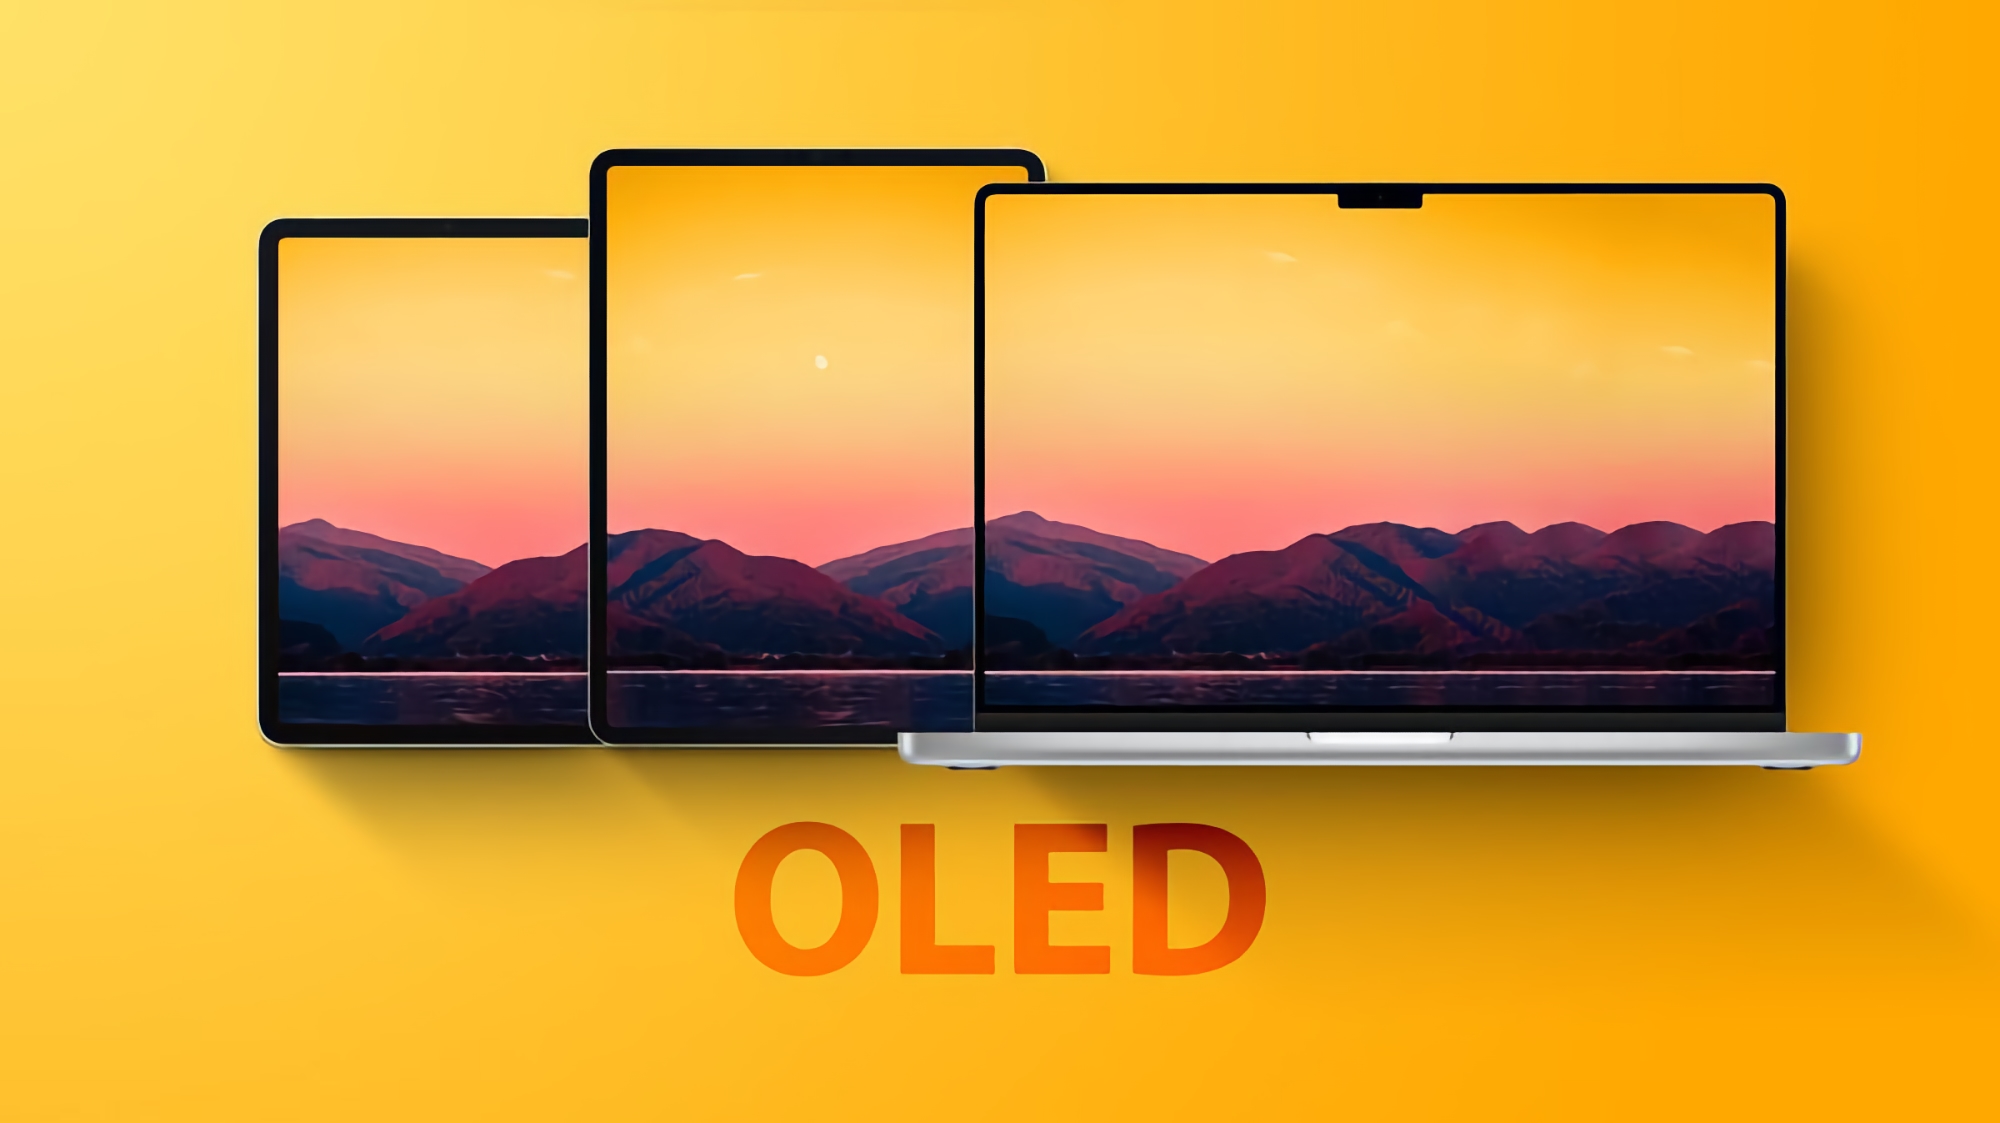 Fuente: Apple instalará pantallas OLED ultrabrillantes en la próxima generación de iPad Pro y MacBook Pro